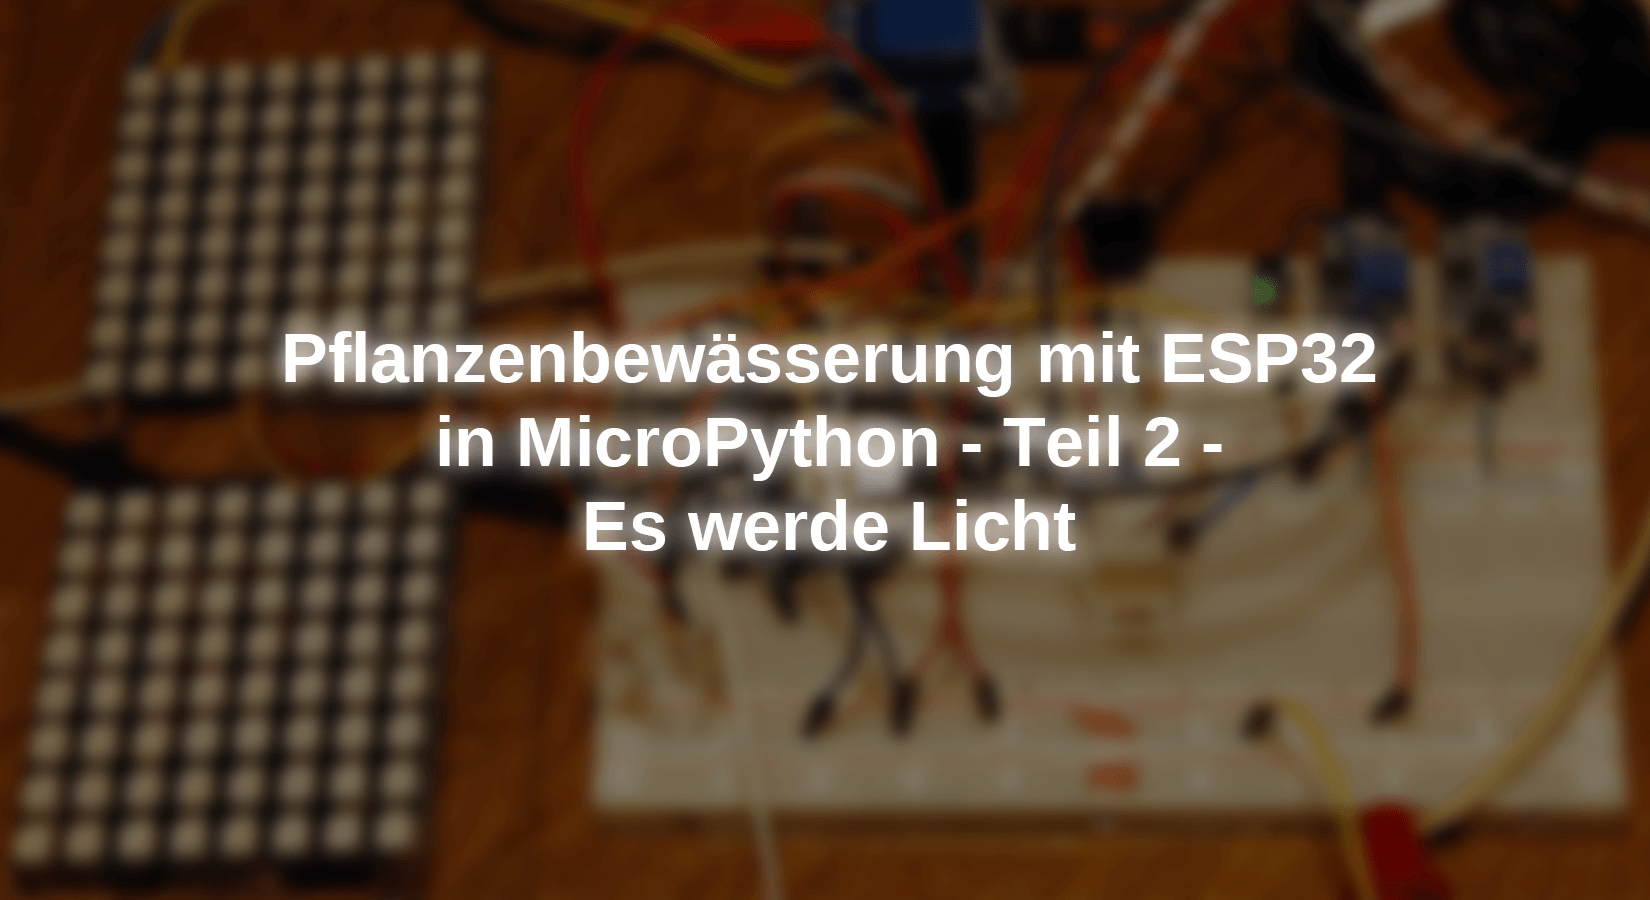 Pflanzenbewässerung mit ESP32 in MicroPython - Teil 2 - Es werde Licht - AZ-Delivery